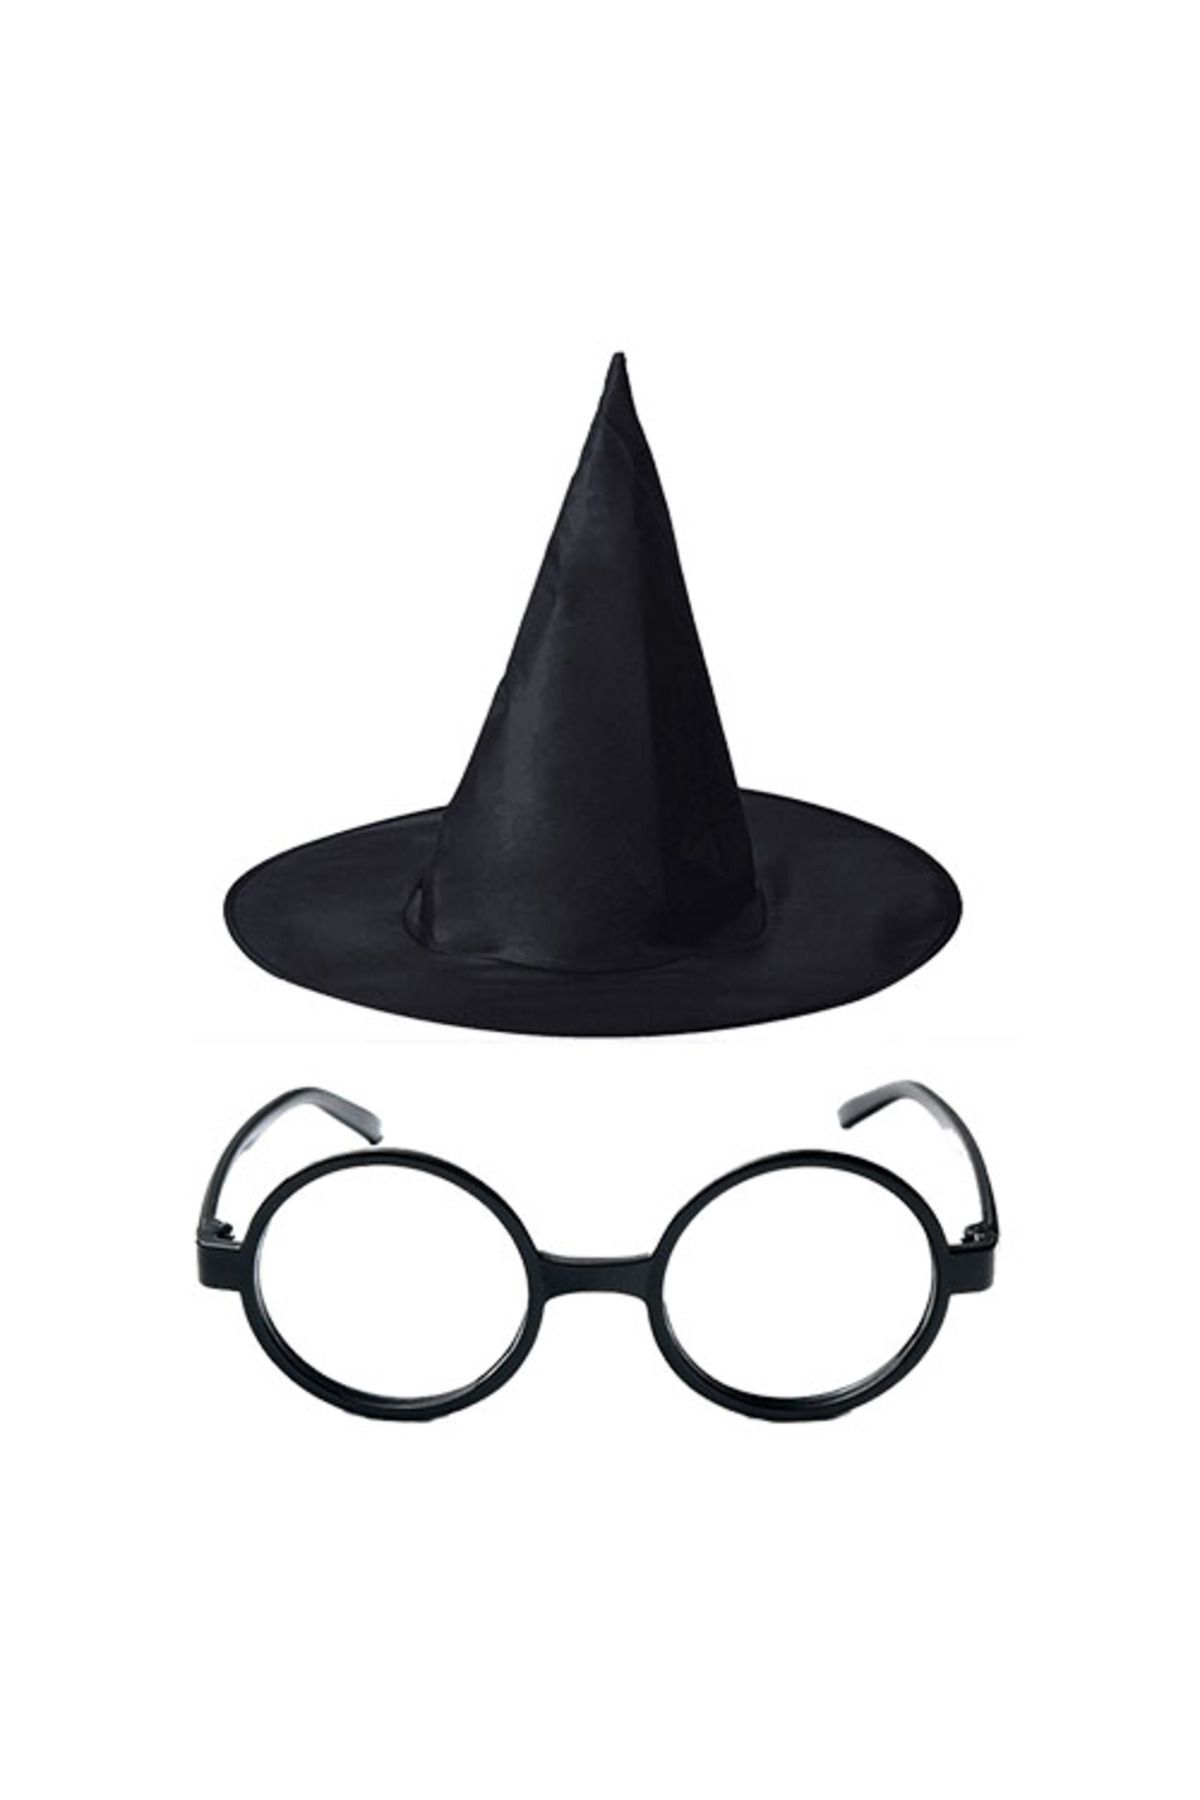 MELFSHOP Harry Potter Büyücü Şapkası ve Harry Potter Büyücü Gözlüğü Siyah Renk